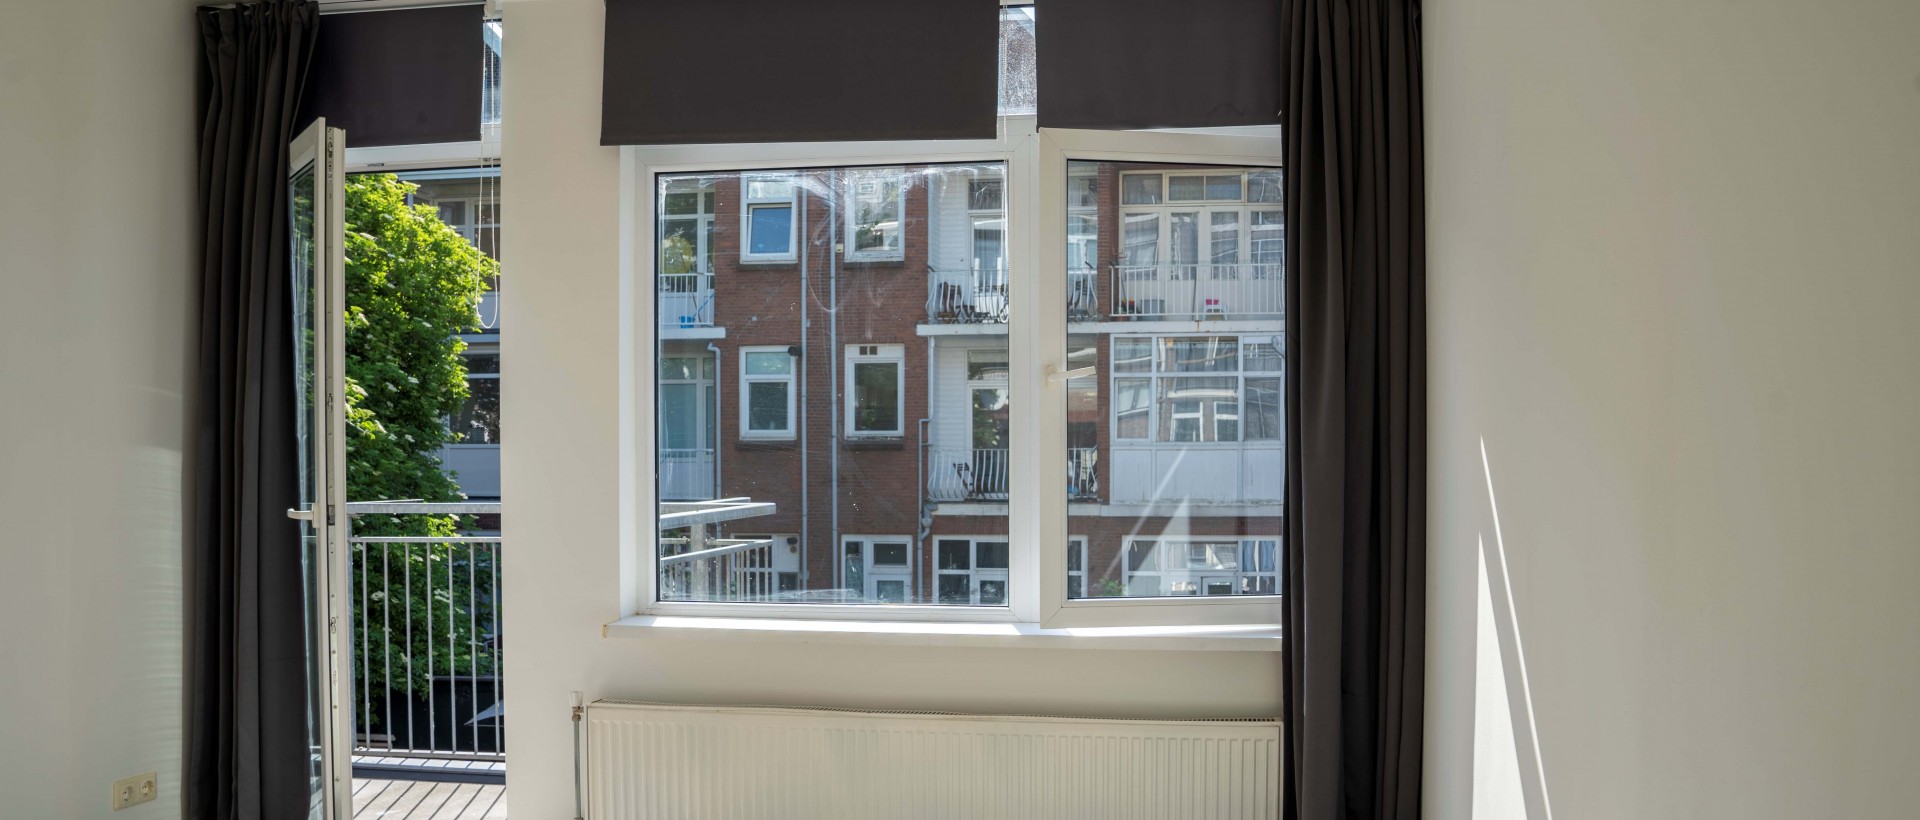 Bekijk foto 1/9 van apartment in Rotterdam